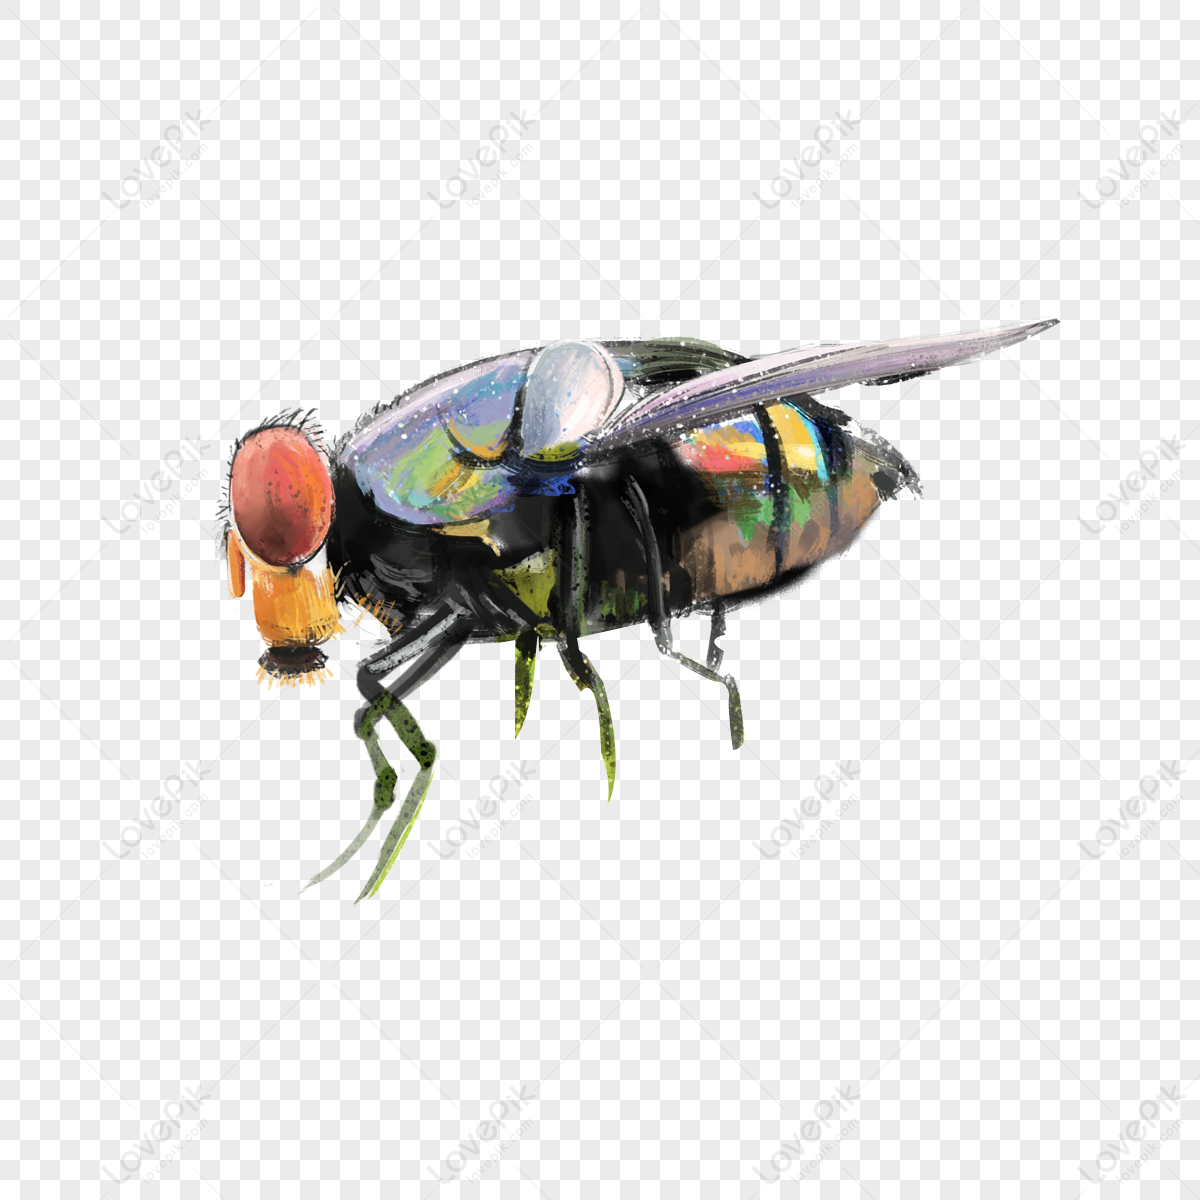 Hãy chiêm ngưỡng hình ảnh về con ruồi đầy sinh động và tuyệt vời này. Bạn sẽ khám phá được vẻ đẹp của những cánh đuôi mảnh mai, sắc màu rực rỡ trên đôi cánh con ruồi cũng như sự tinh tế trong từng chi tiết của chúng.